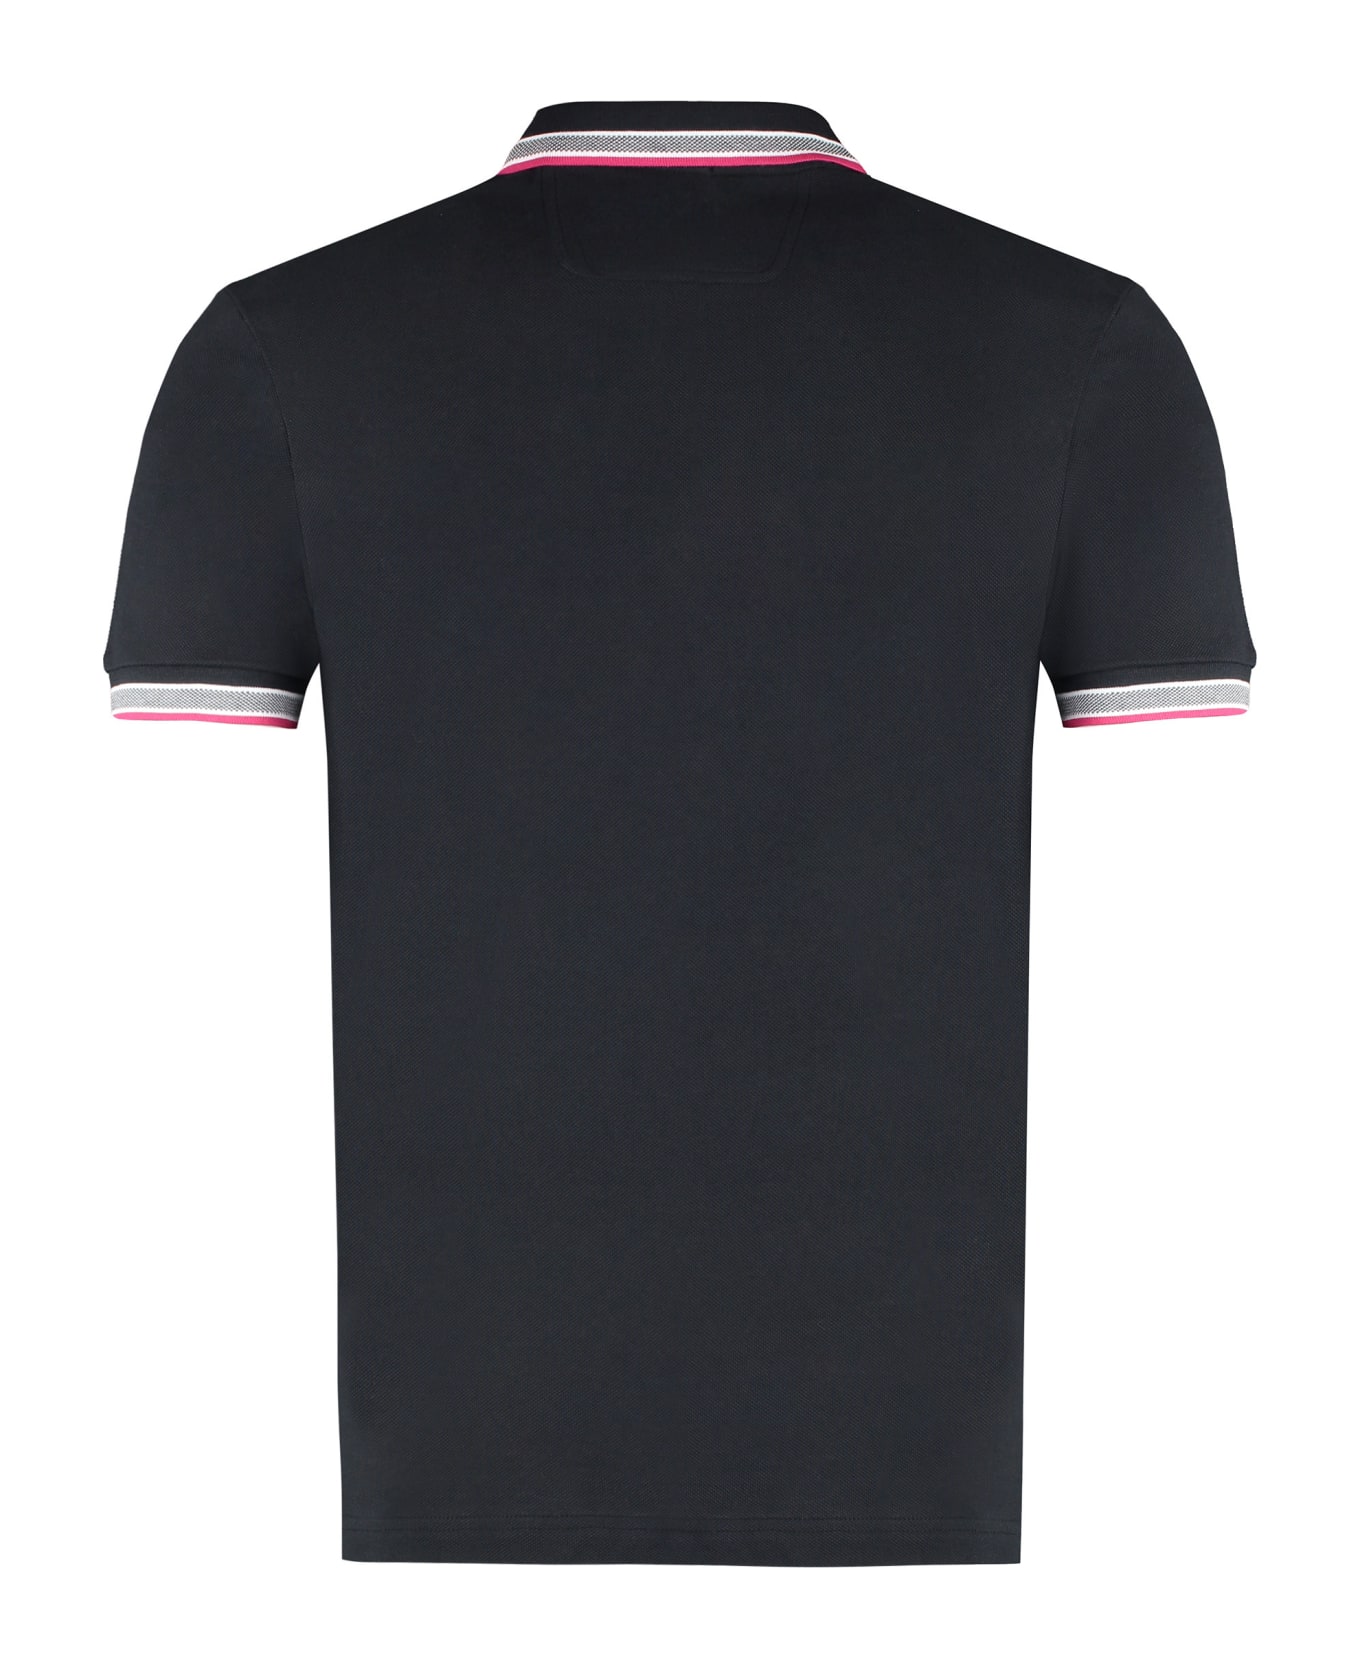 Hugo Boss Short Sleeve Cotton Pique Polo Shirt - Black